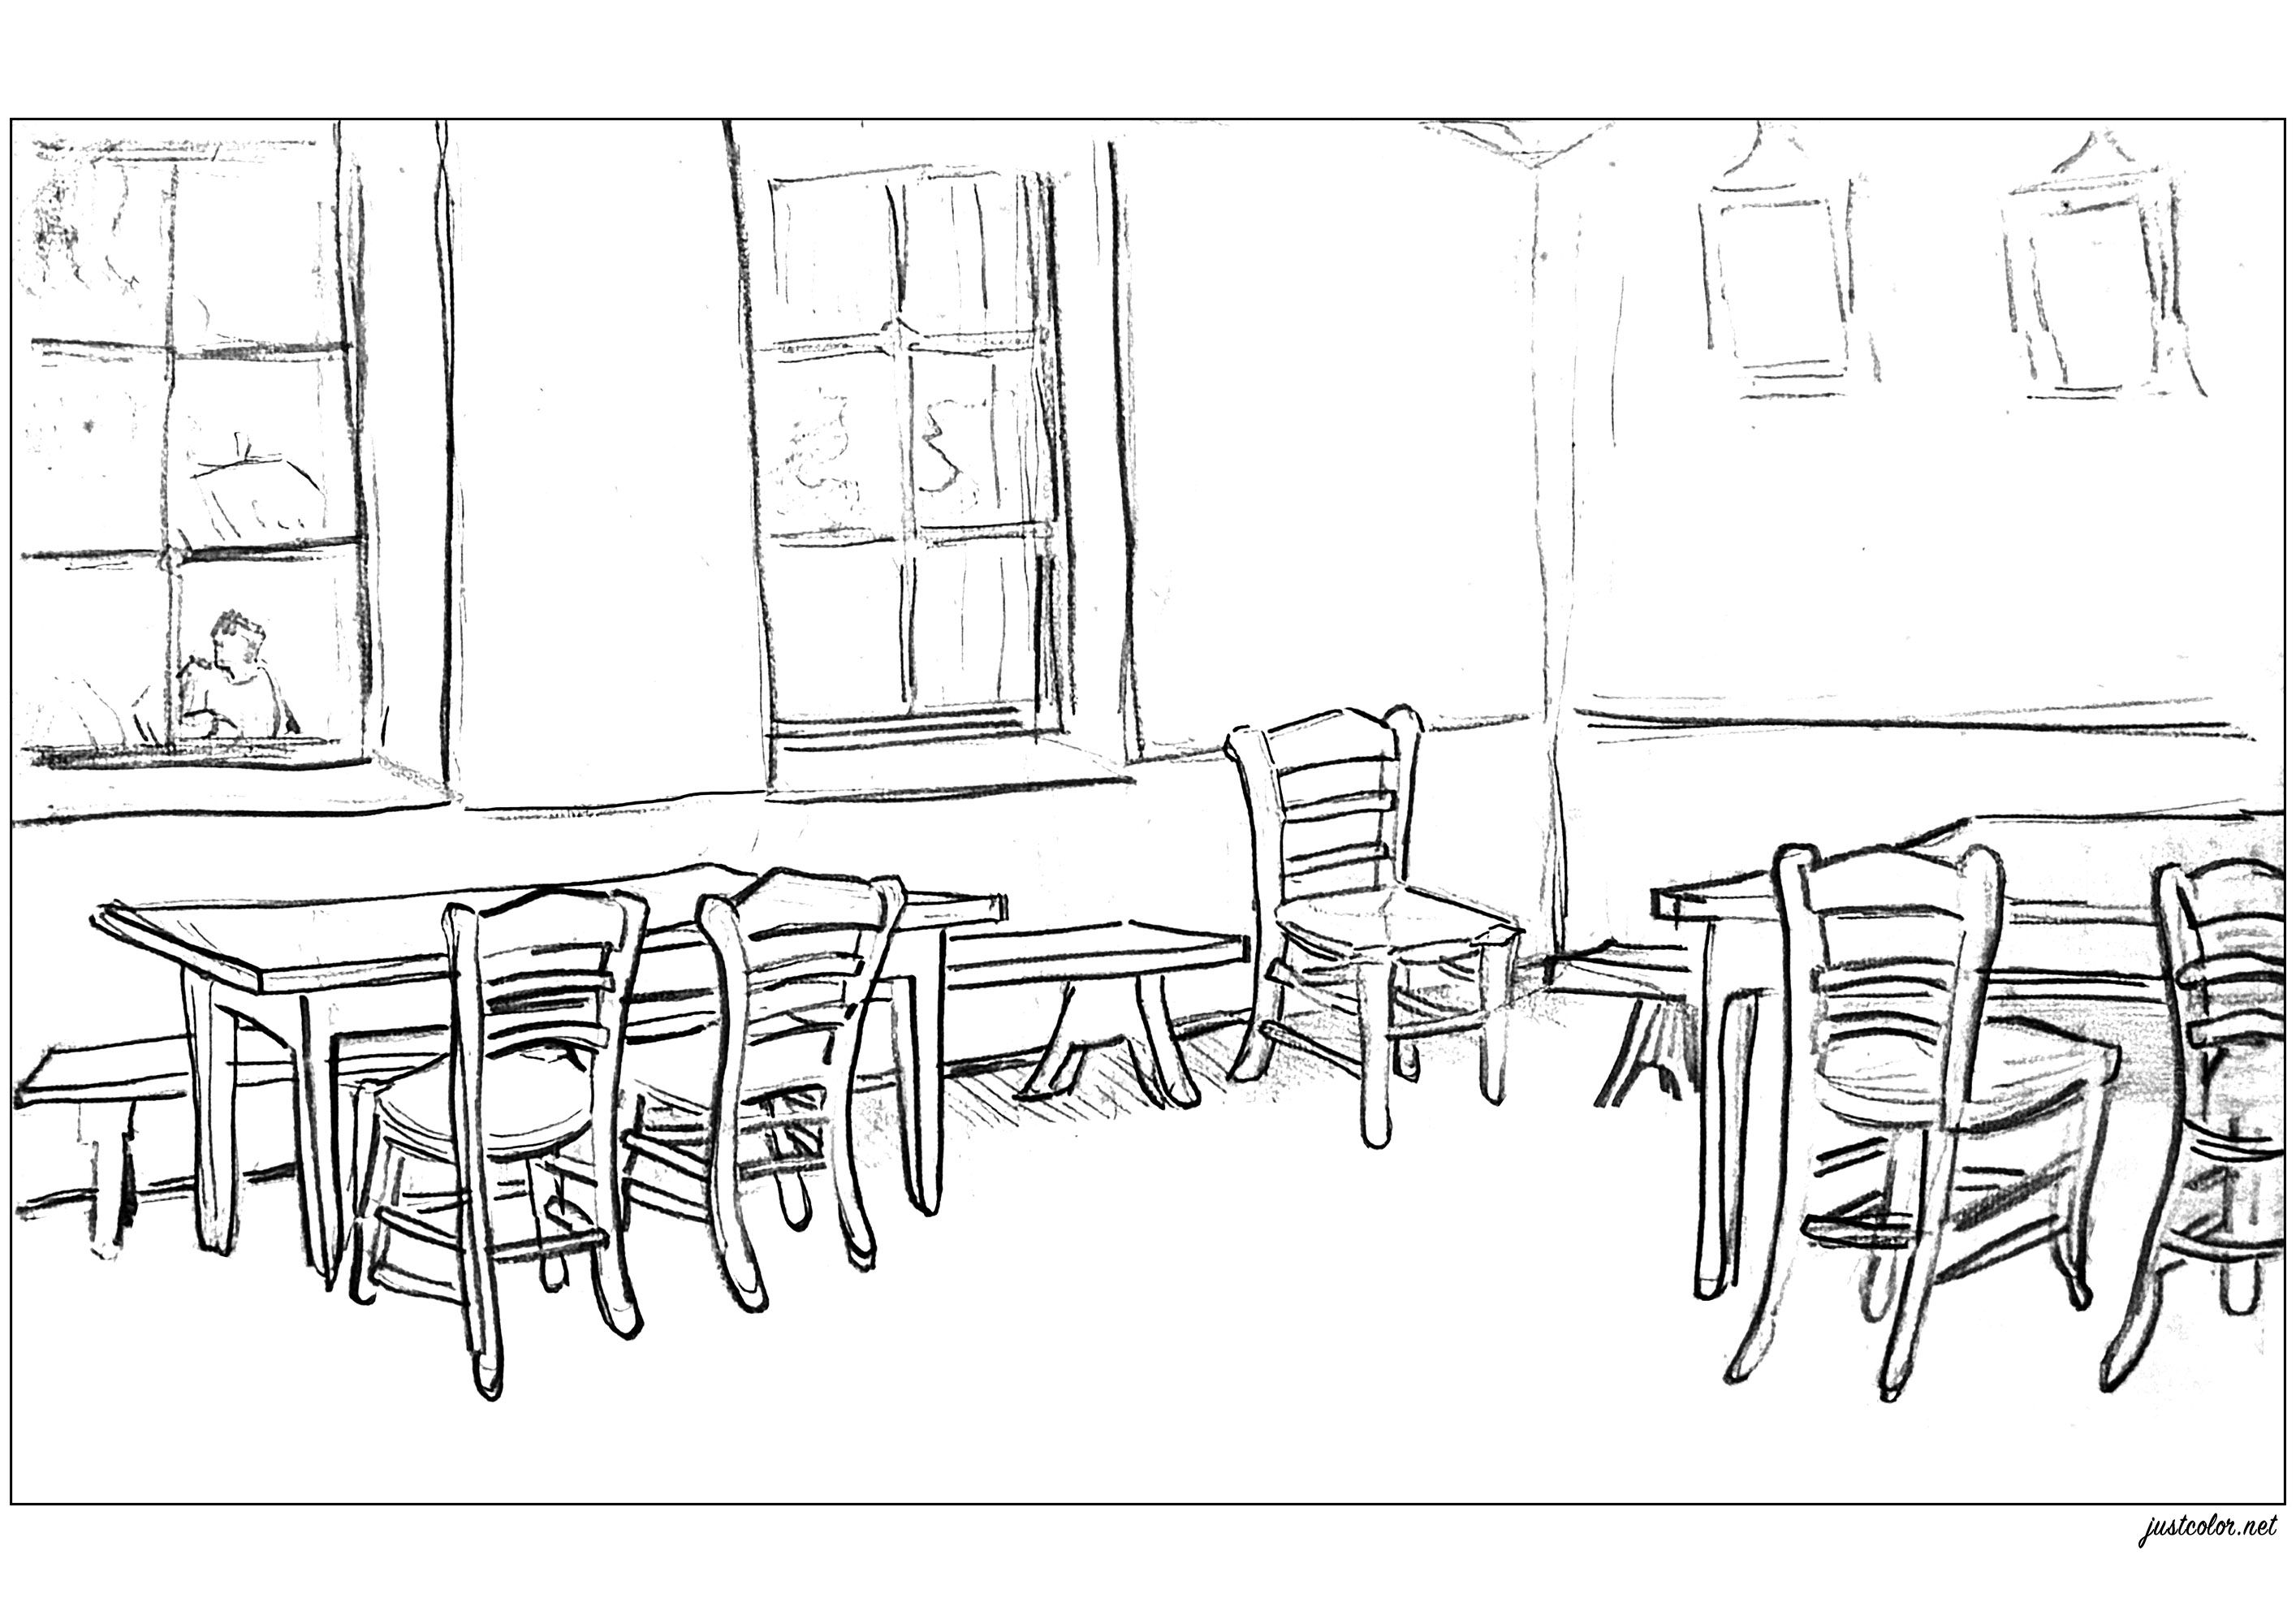 Interieur mit Tischen und Stühlen (Skizze von 1890, von Vincent Van Gogh). Kolorierung nach einer Skizze von Vincent Van Gogh aus dem Jahr 1890, die er am Ende seines Lebens in Auvers-sur-Oise malte, Künstler : Art'Isabelle